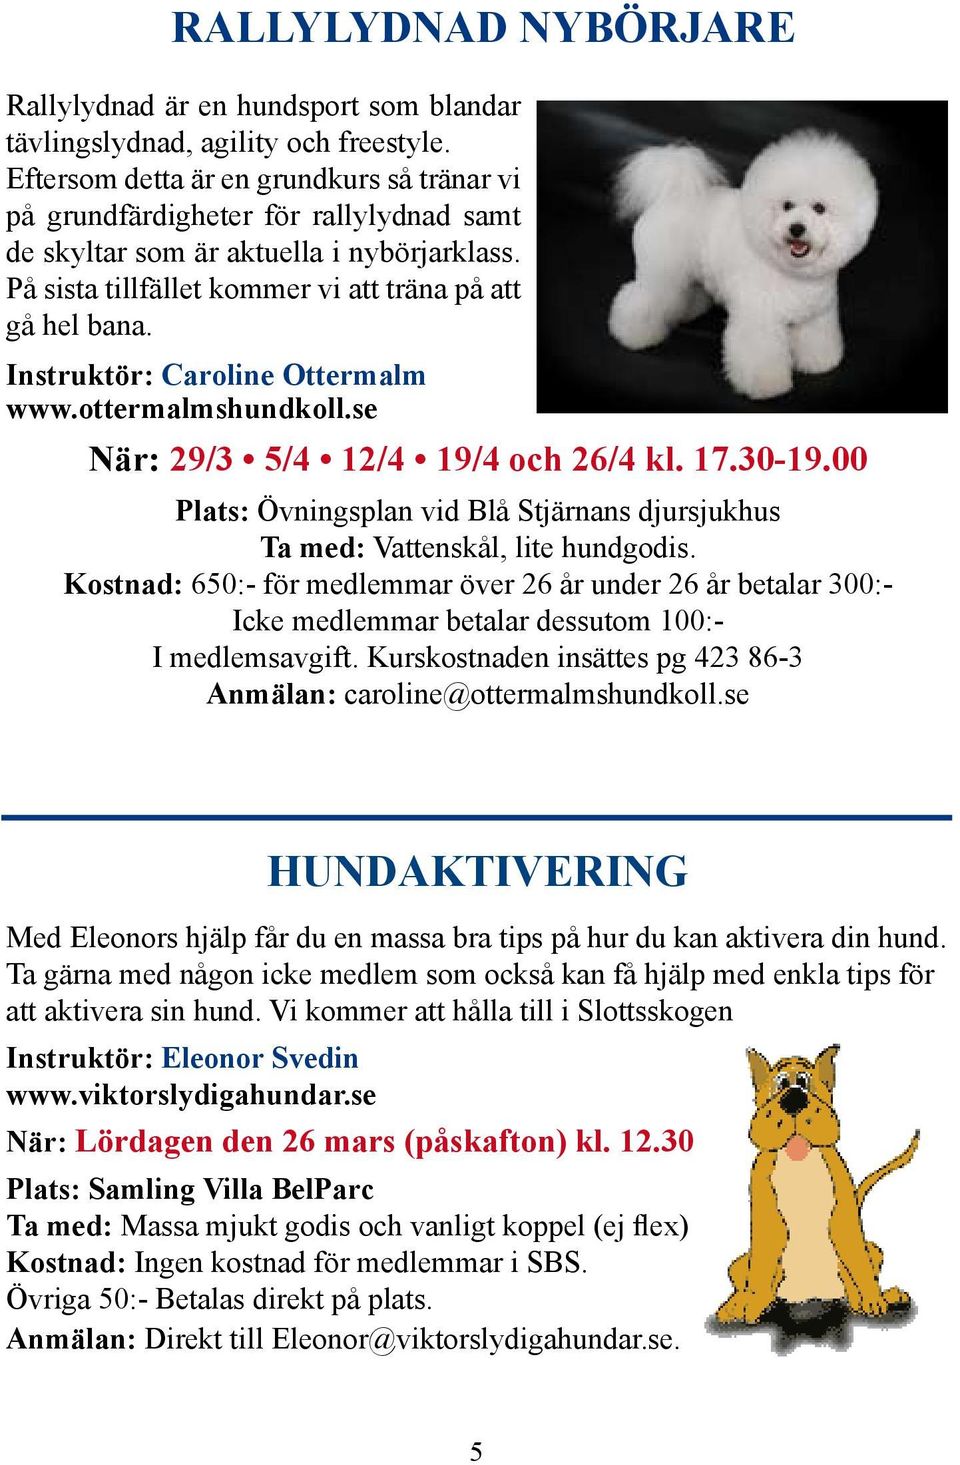 Instruktör: Caroline Ottermalm www.ottermalmshundkoll.se När: 29/3 5/4 12/4 19/4 och 26/4 kl. 17.30-19.00 Plats: Övningsplan vid Blå Stjärnans djursjukhus Ta med: Vattenskål, lite hundgodis.